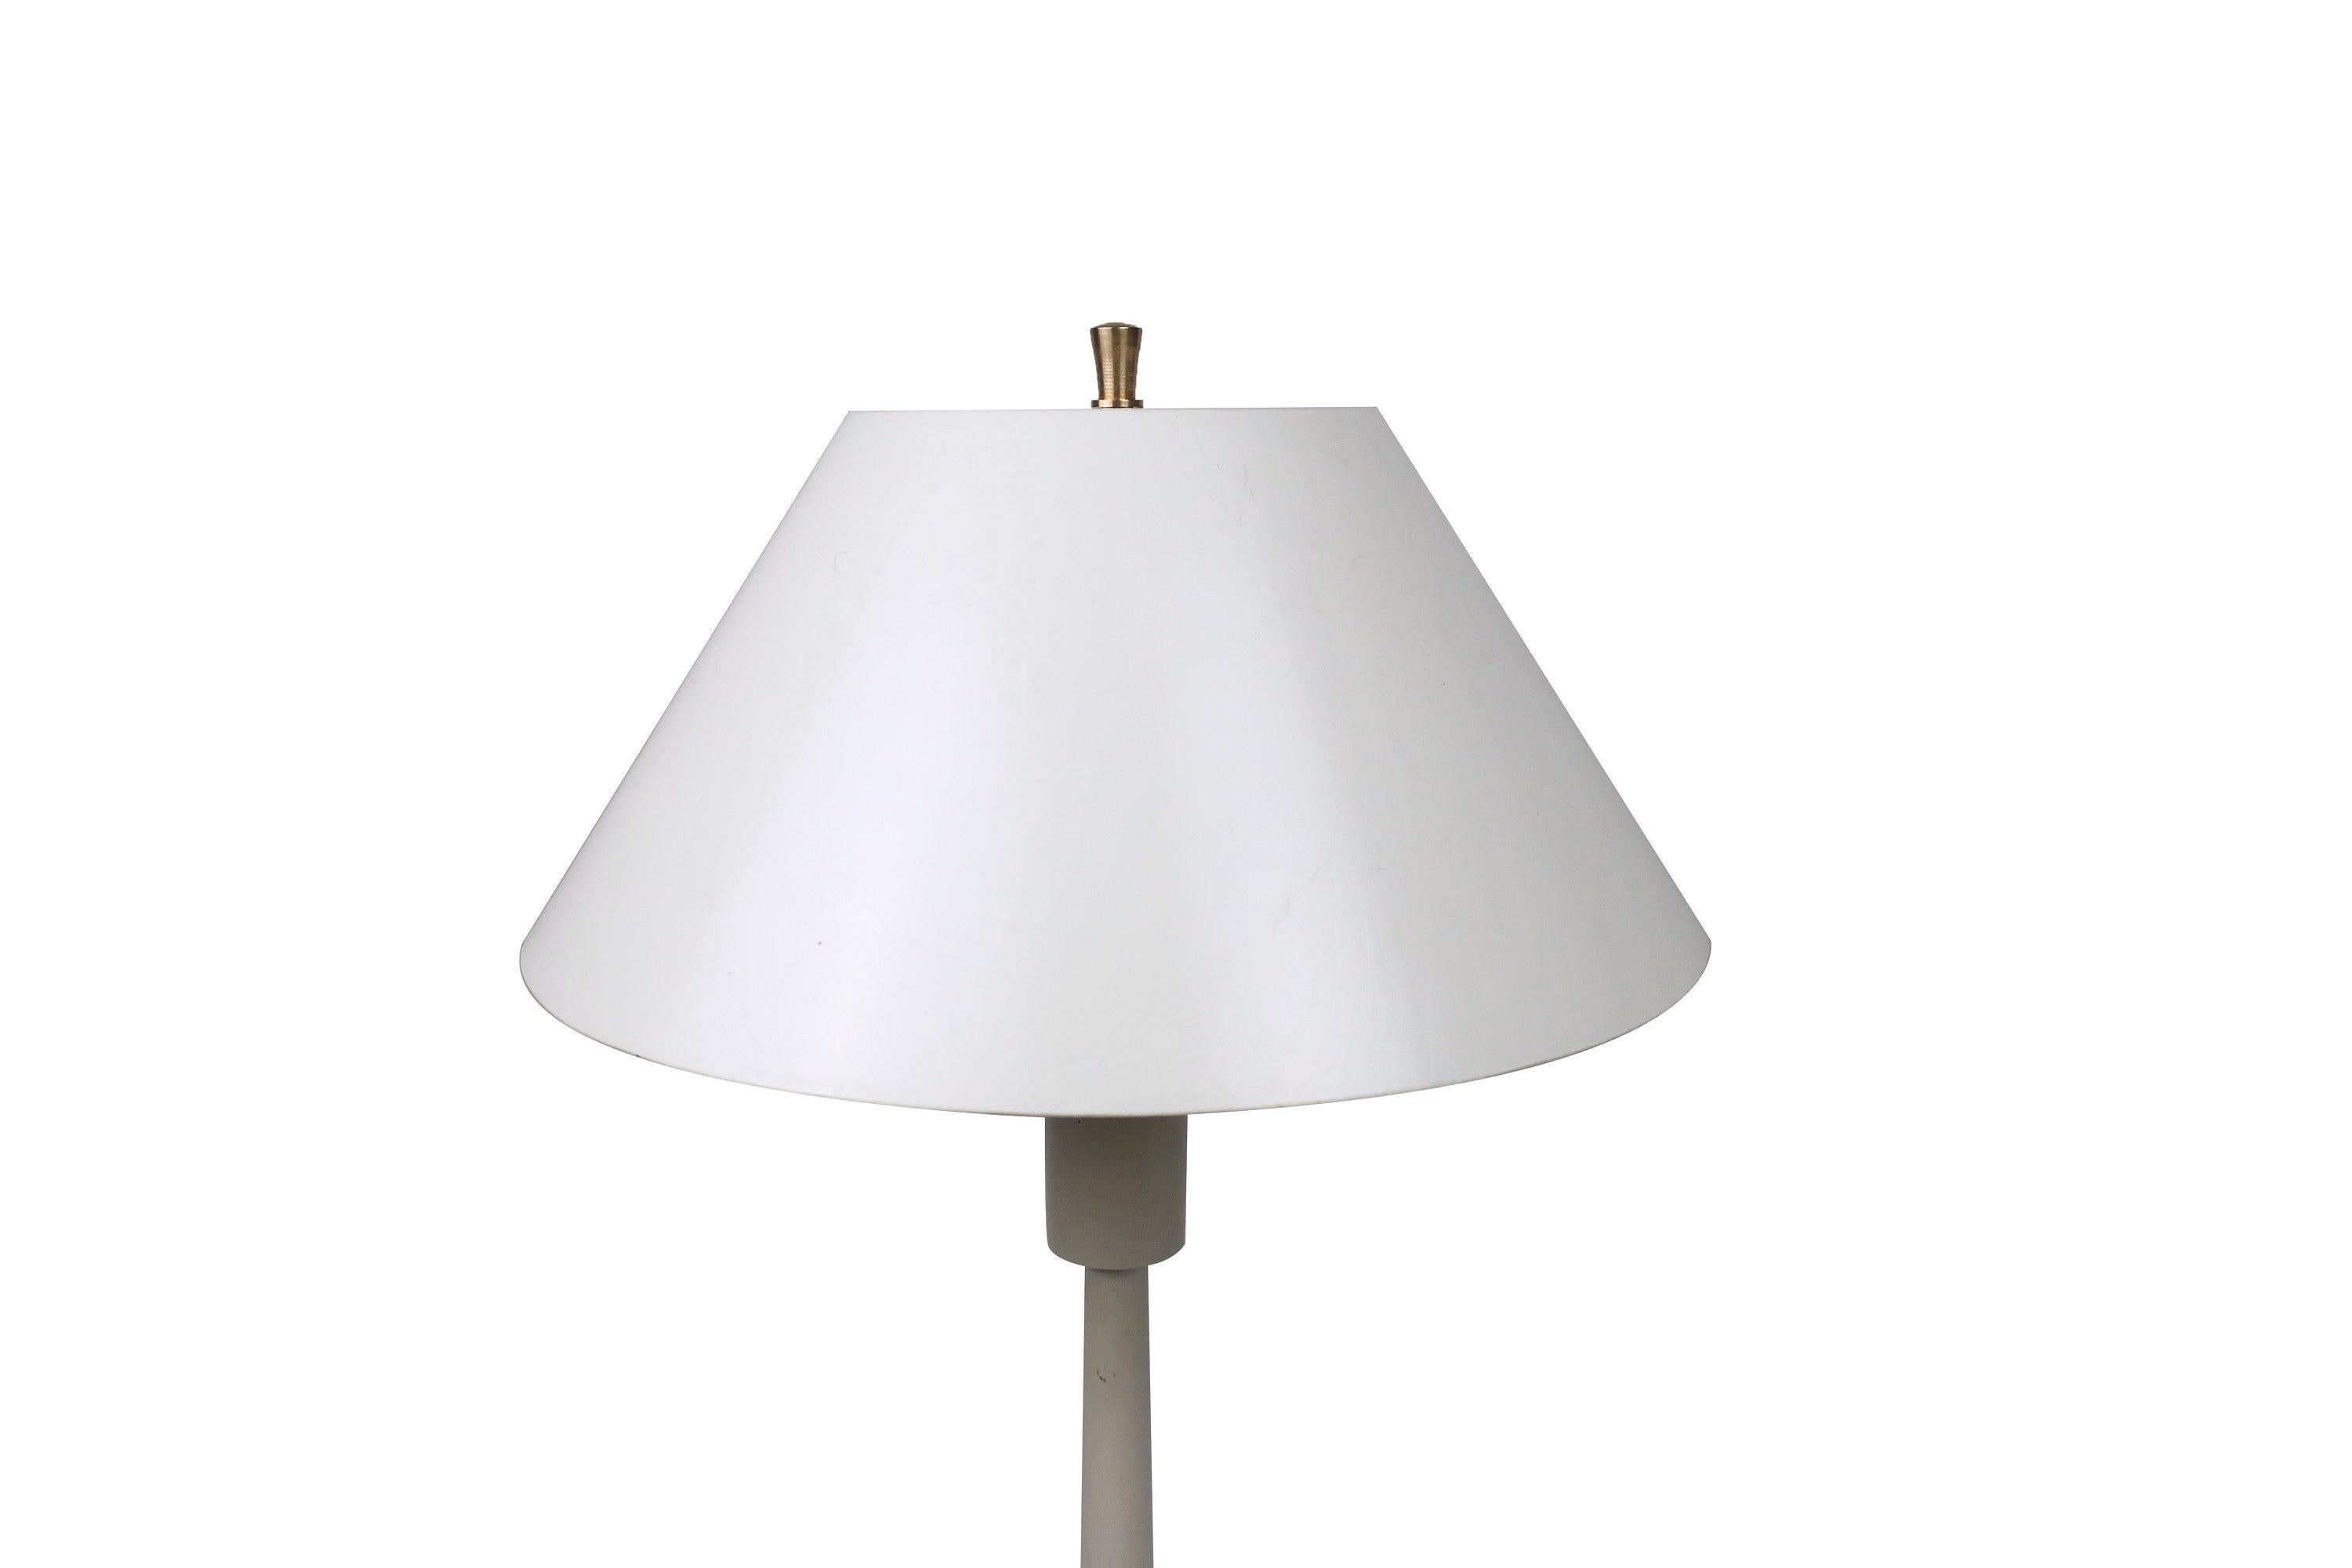 lightolier vintage table lamp